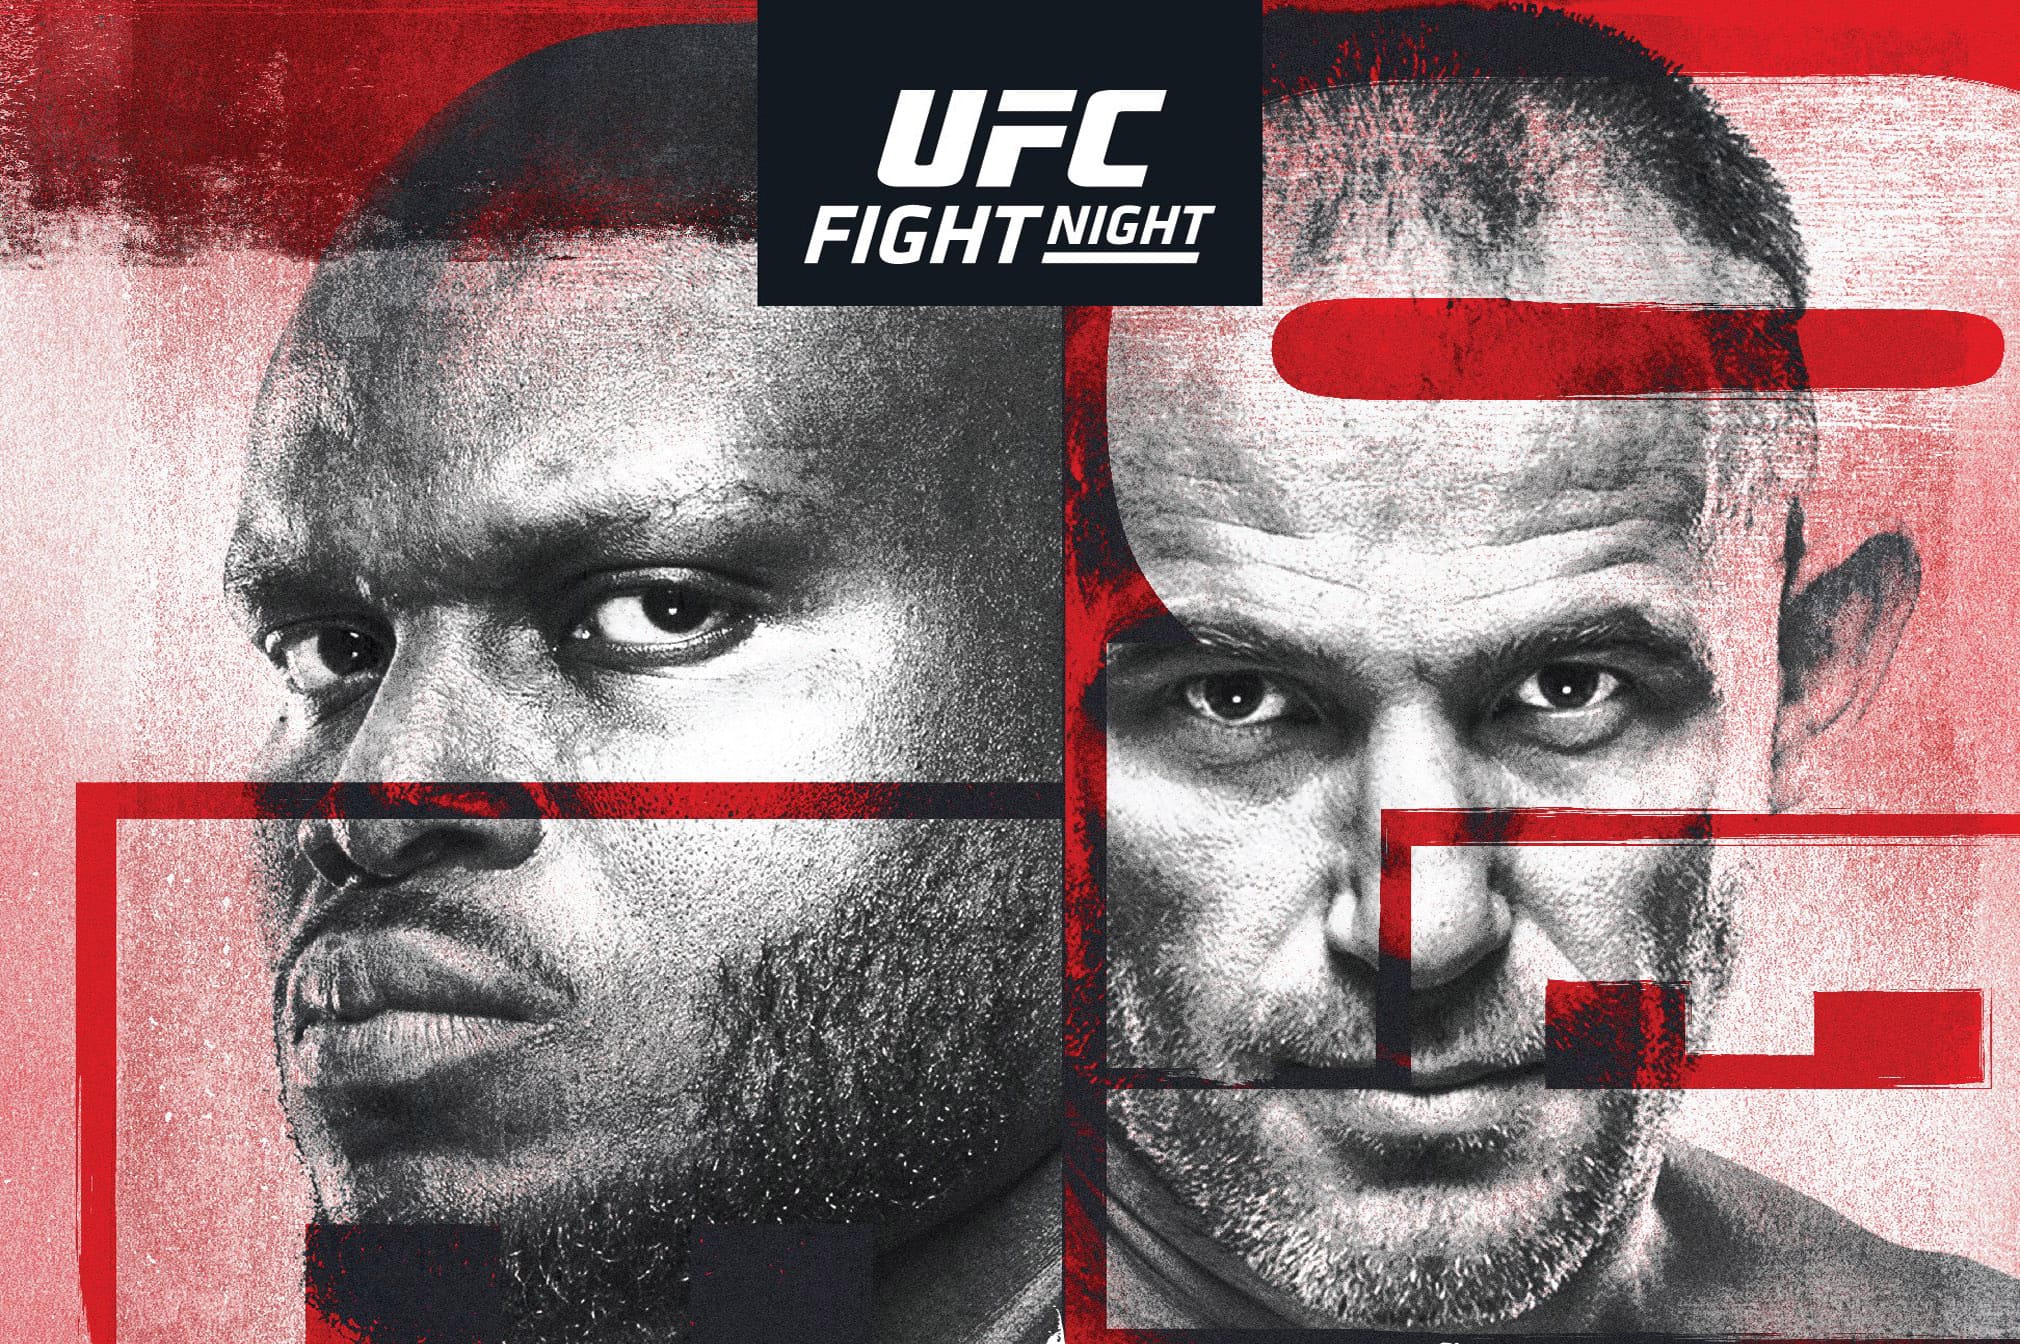 UFC Fight Night 174: Льюис - Олейник дата проведения, кард, участники и результаты